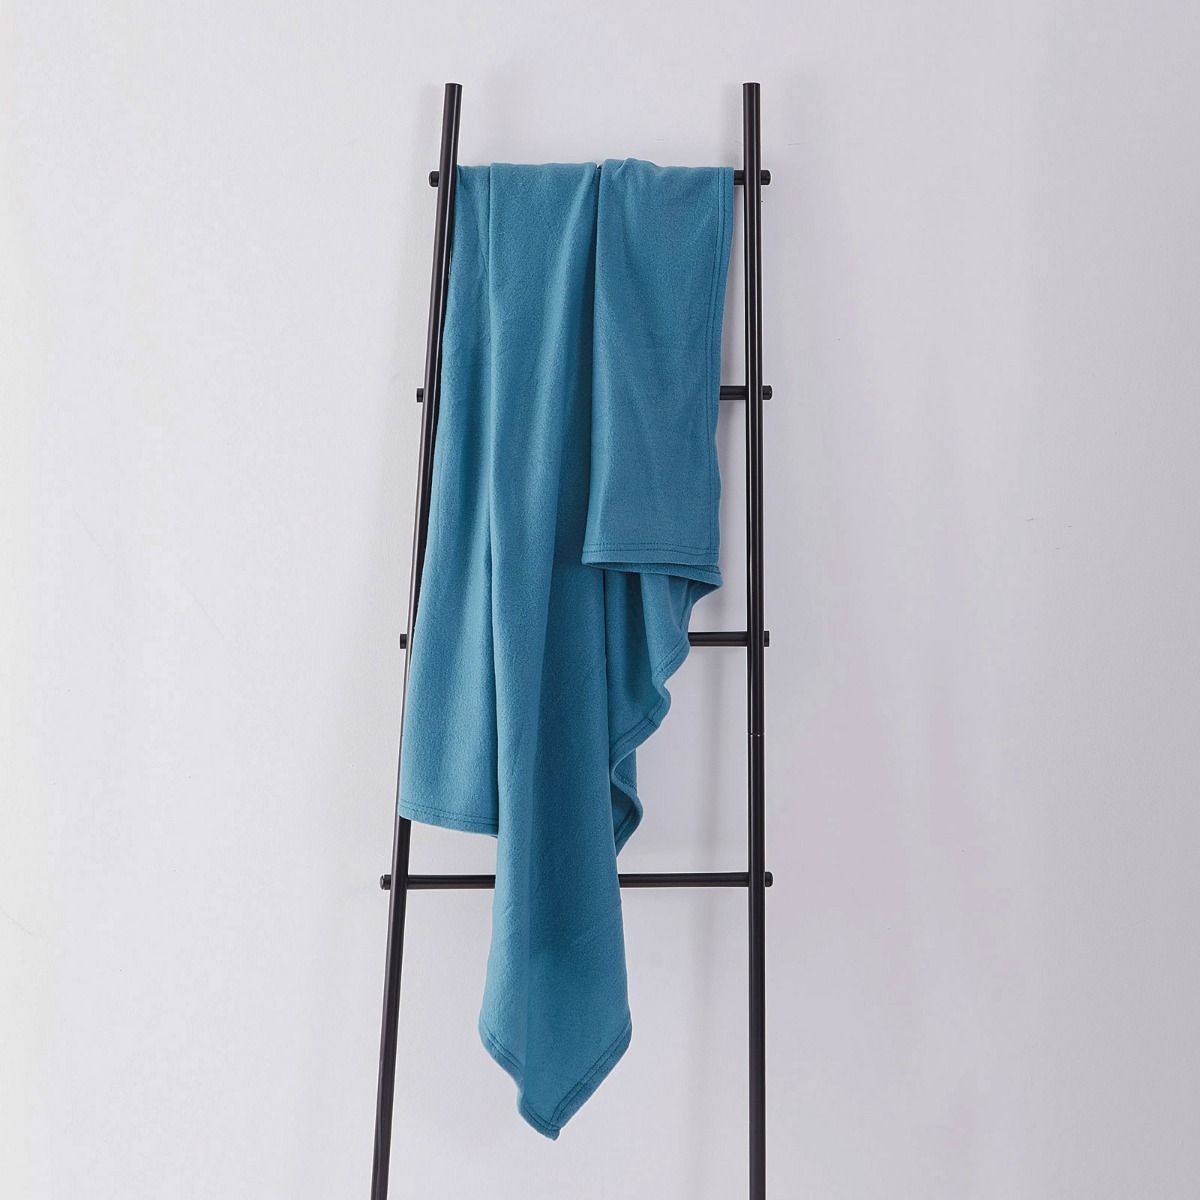 Fleece Blanket 120x150cm - Teal